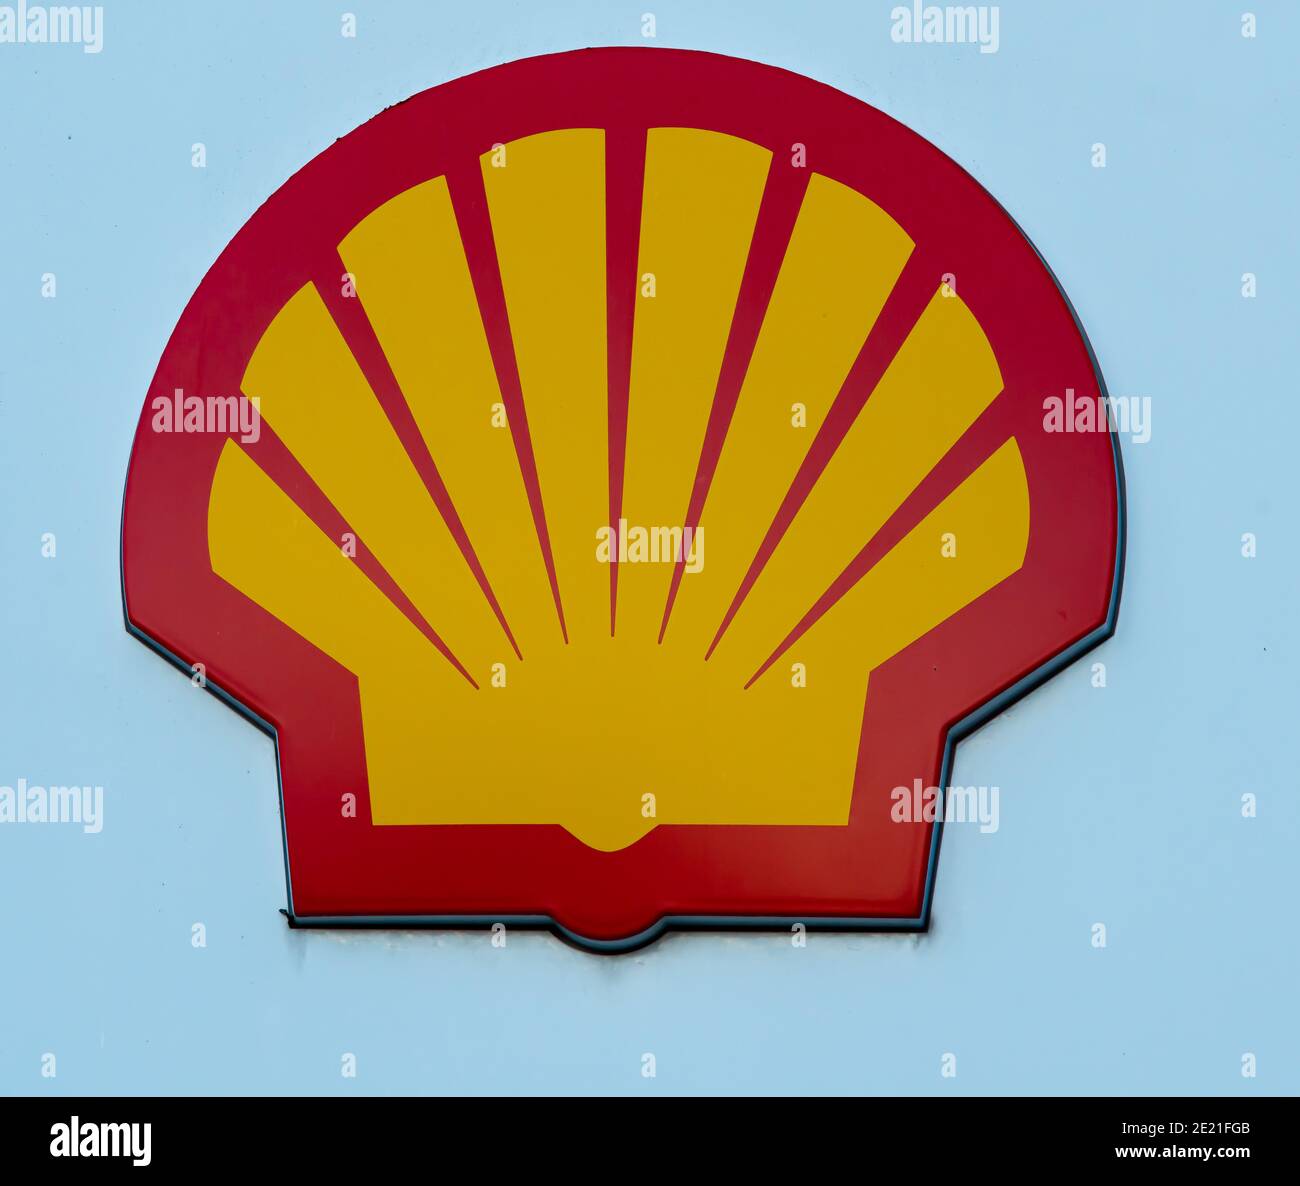 Shell gasoline station logo, close up image. Stock Photo